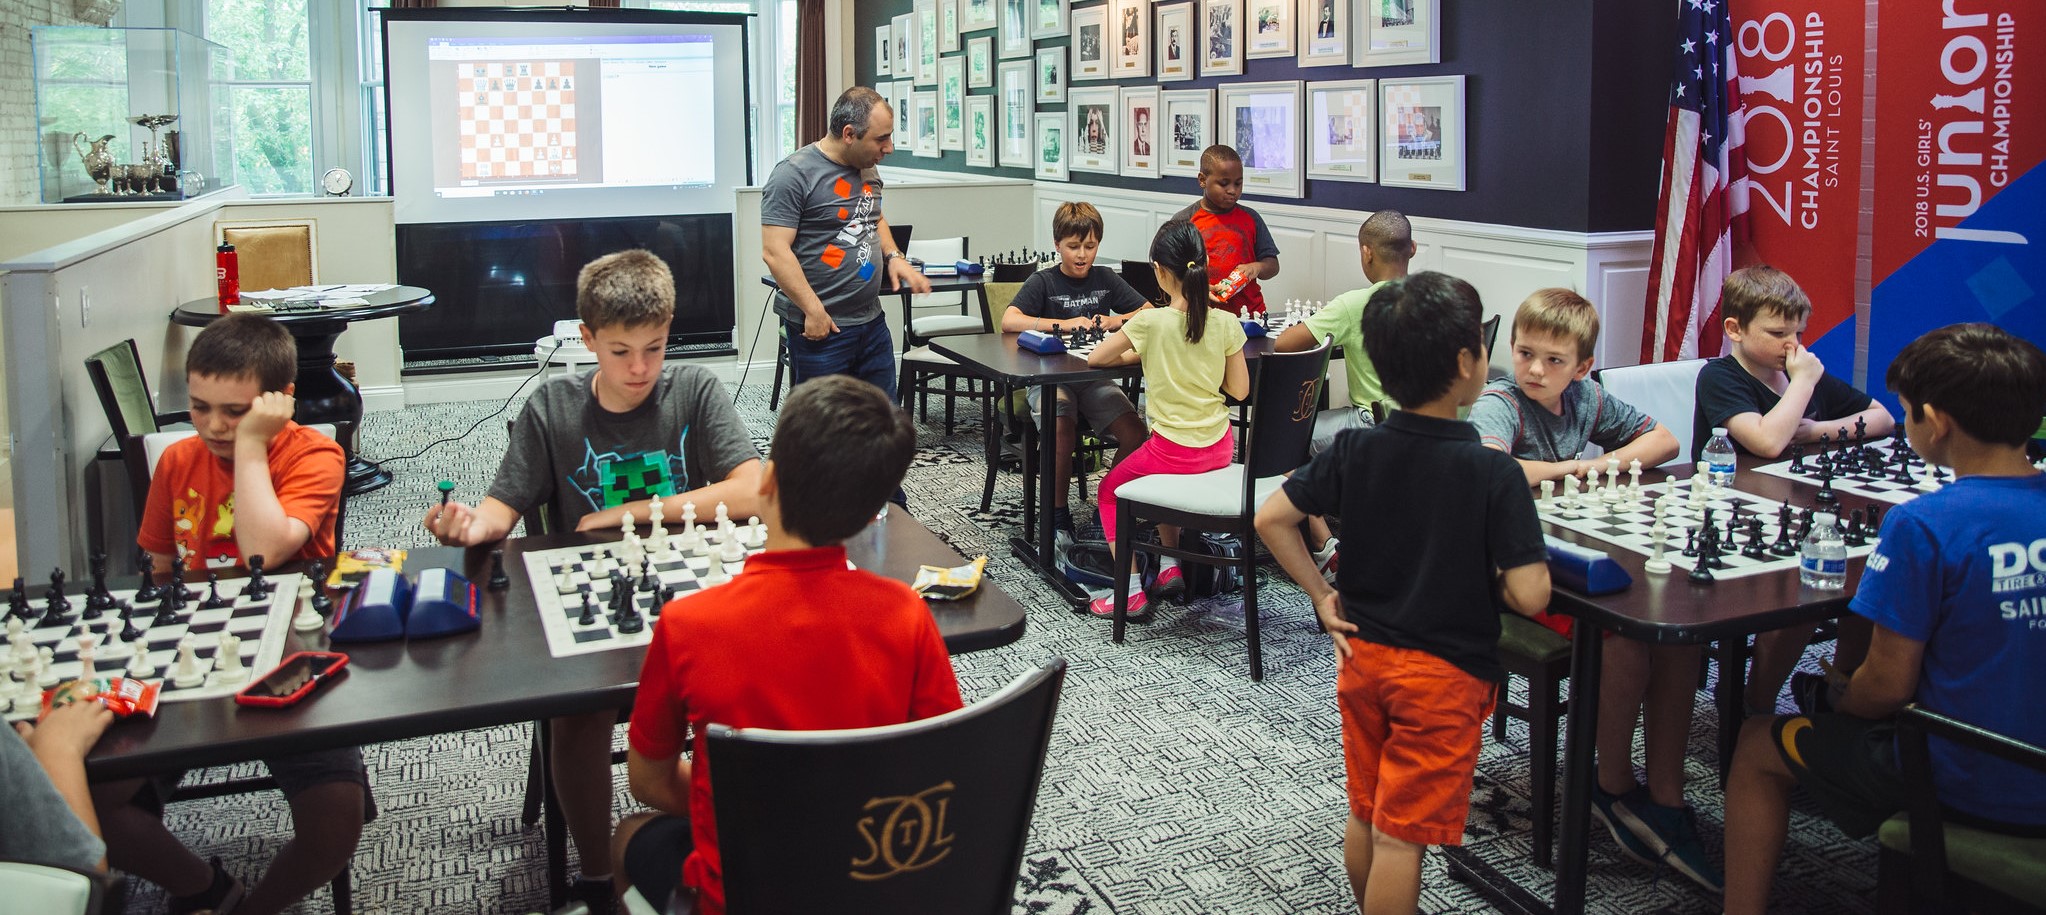 Chess Summer Camp Saint Louis Chess Club